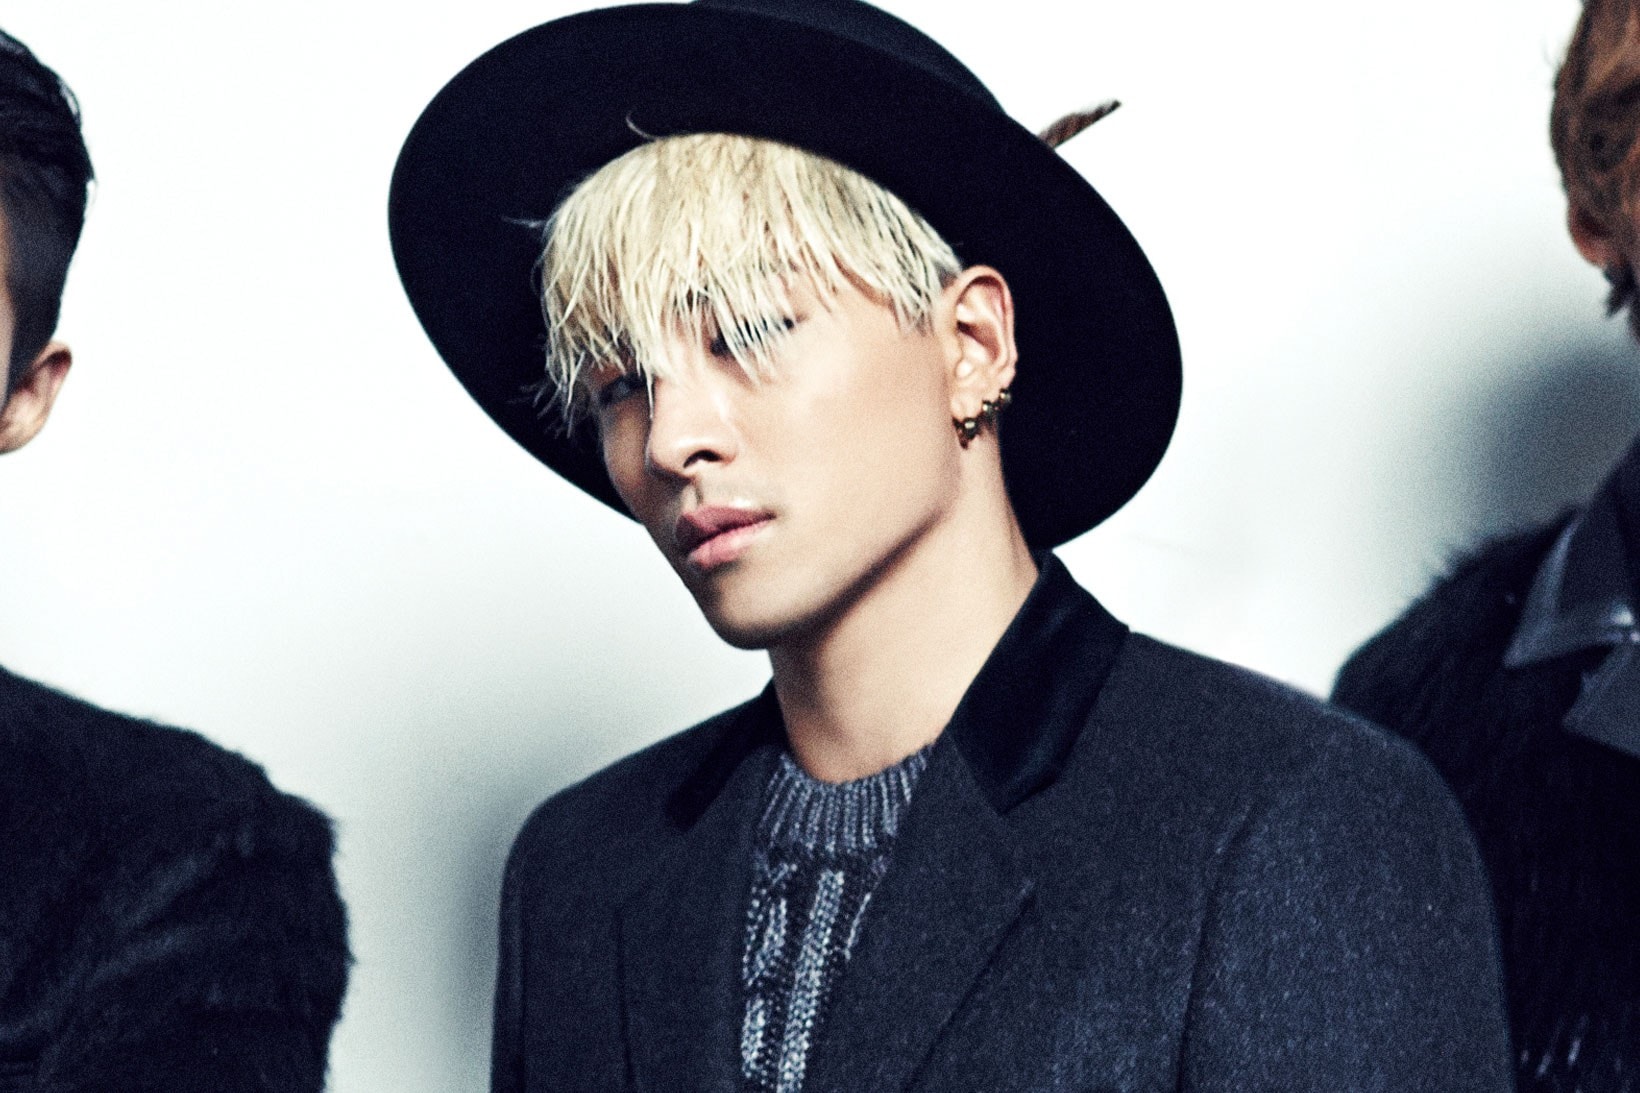 Taeyang Big Bang Givenchy Brand Ambassador Announcement Info